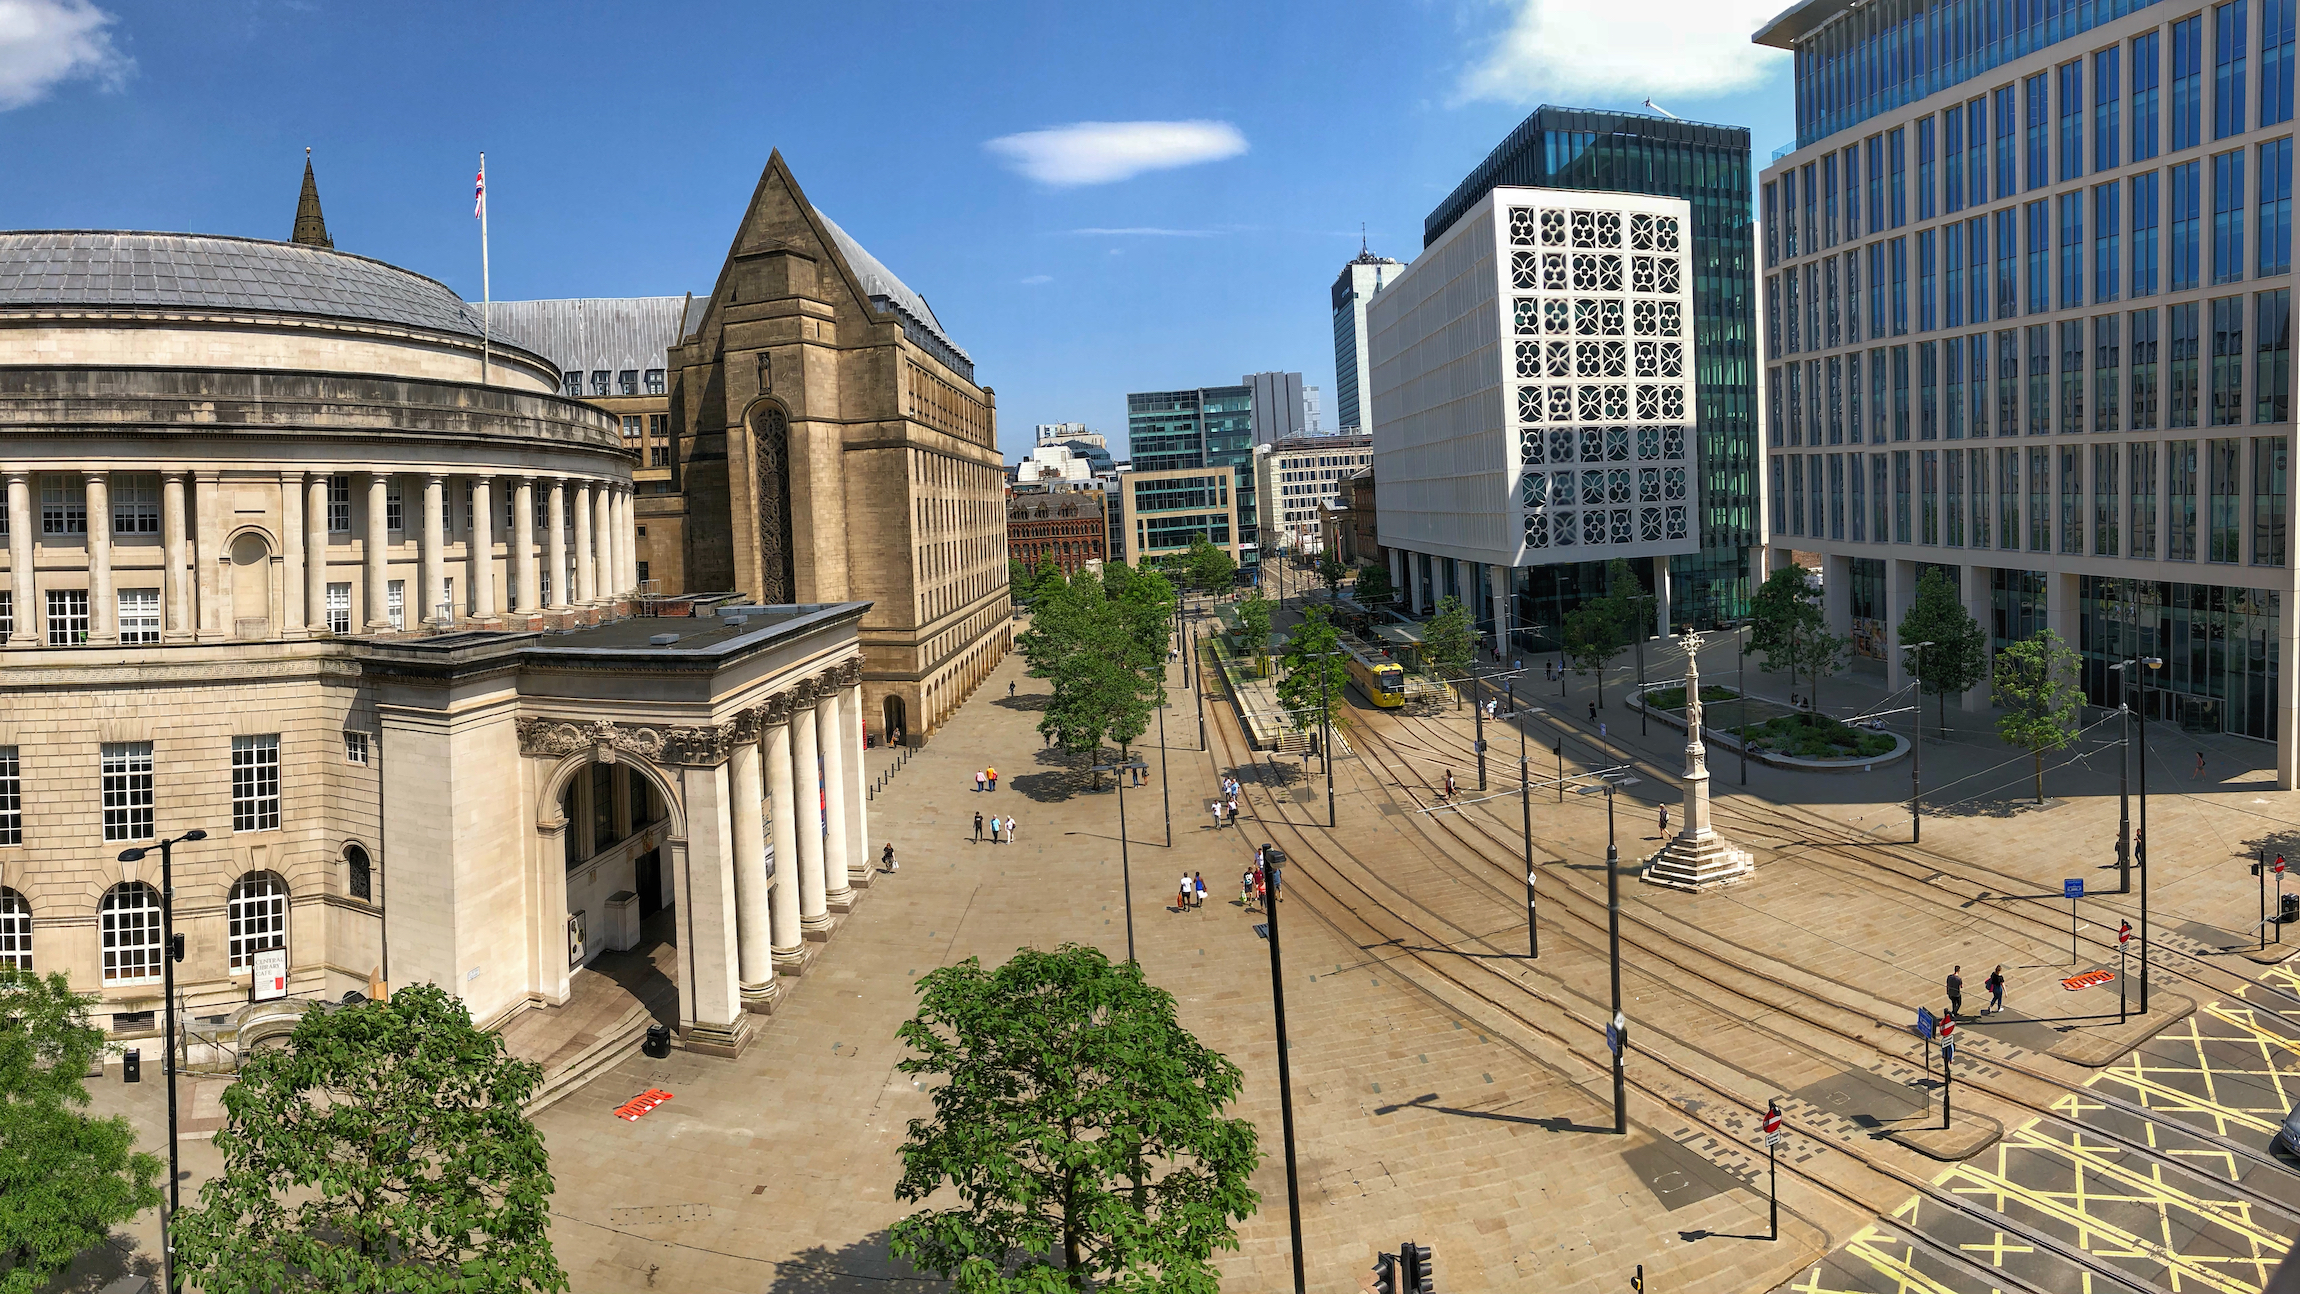 Plac Świętego Piotra w Manchesterze z widokiem na linie tramwajowe - St. Peter's Square